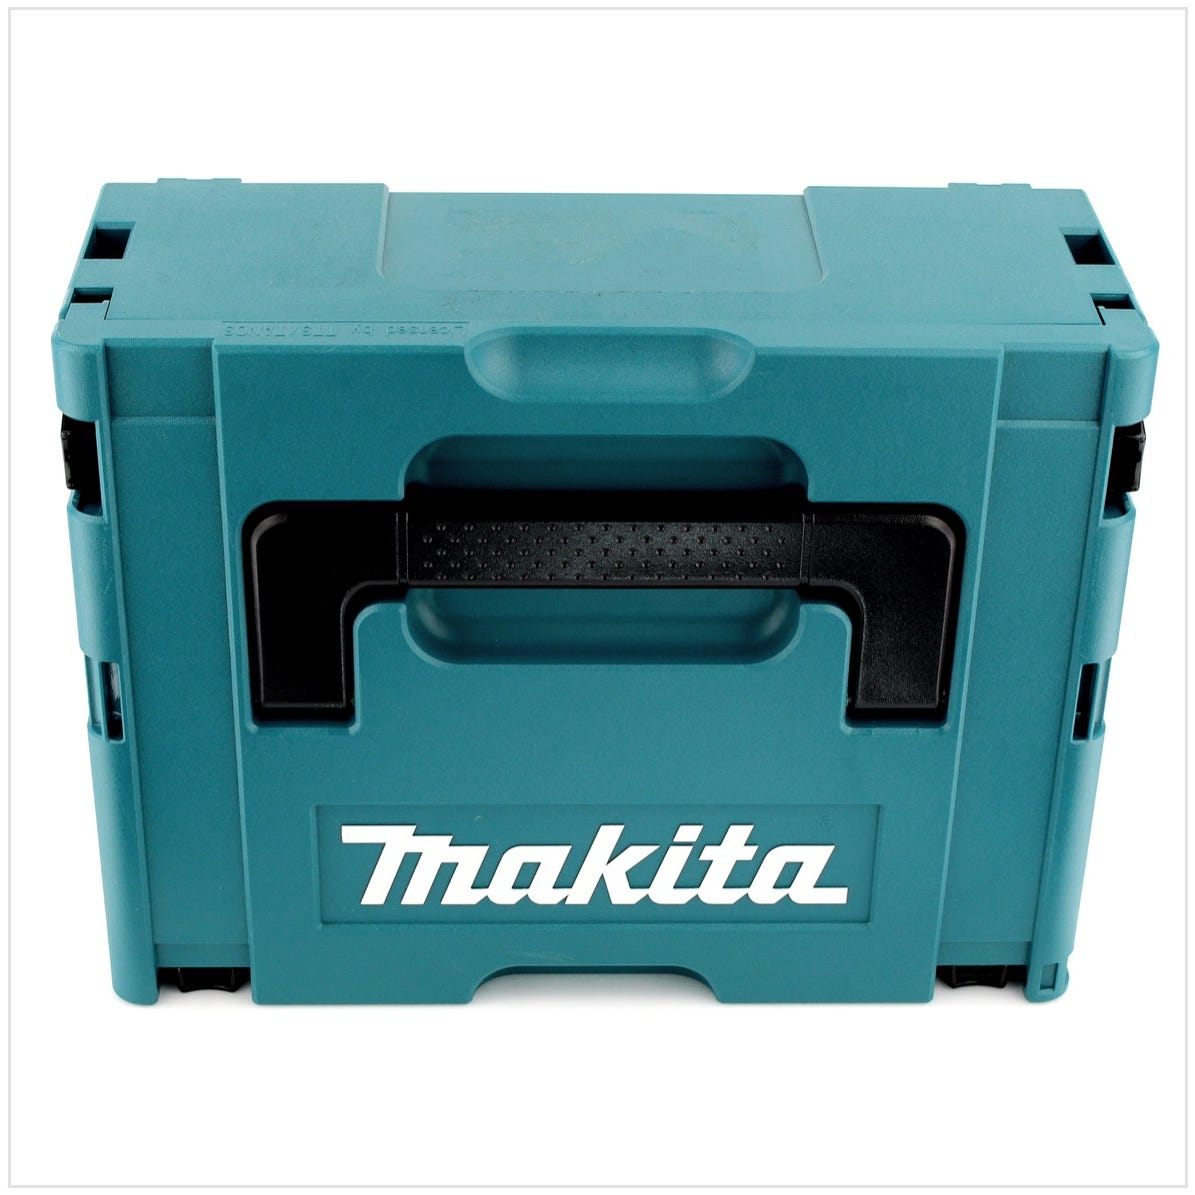 Makita DHP 453 RMJ 18 V Perceuse visseuse à percussion sans fil avec boîtier Makpac + 2x Batteries BL 1840 4,0 Ah + Chargeur DC18RC 2